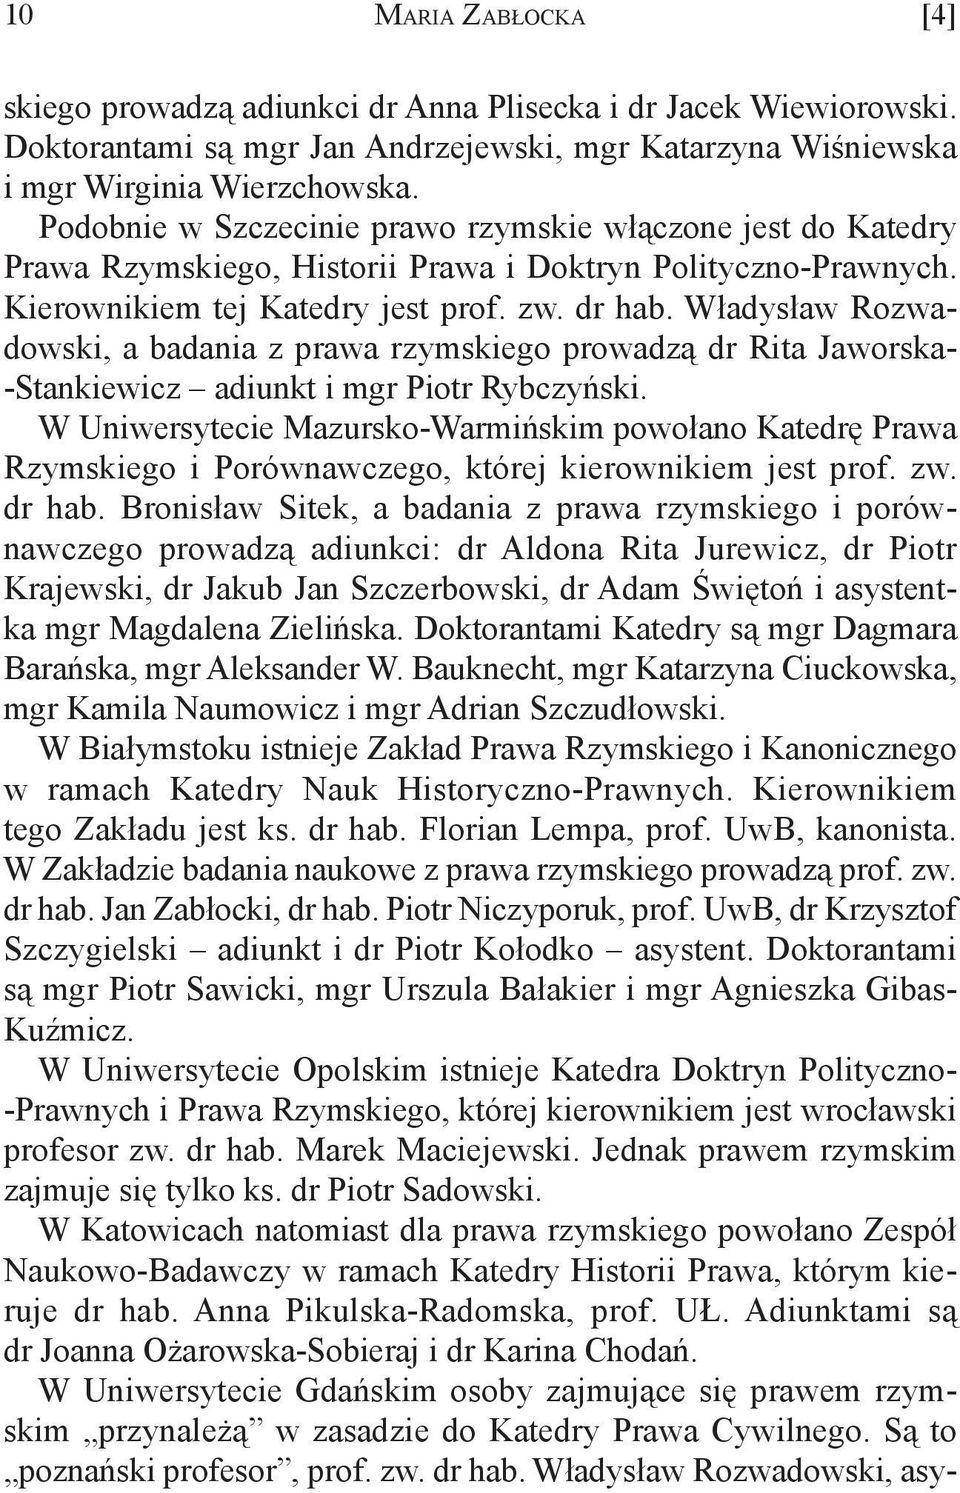 Władysław Rozwadowski, a badania z prawa rzymskiego prowadzą dr Rita Jaworska- -Stankiewicz adiunkt i mgr Piotr Rybczyński.